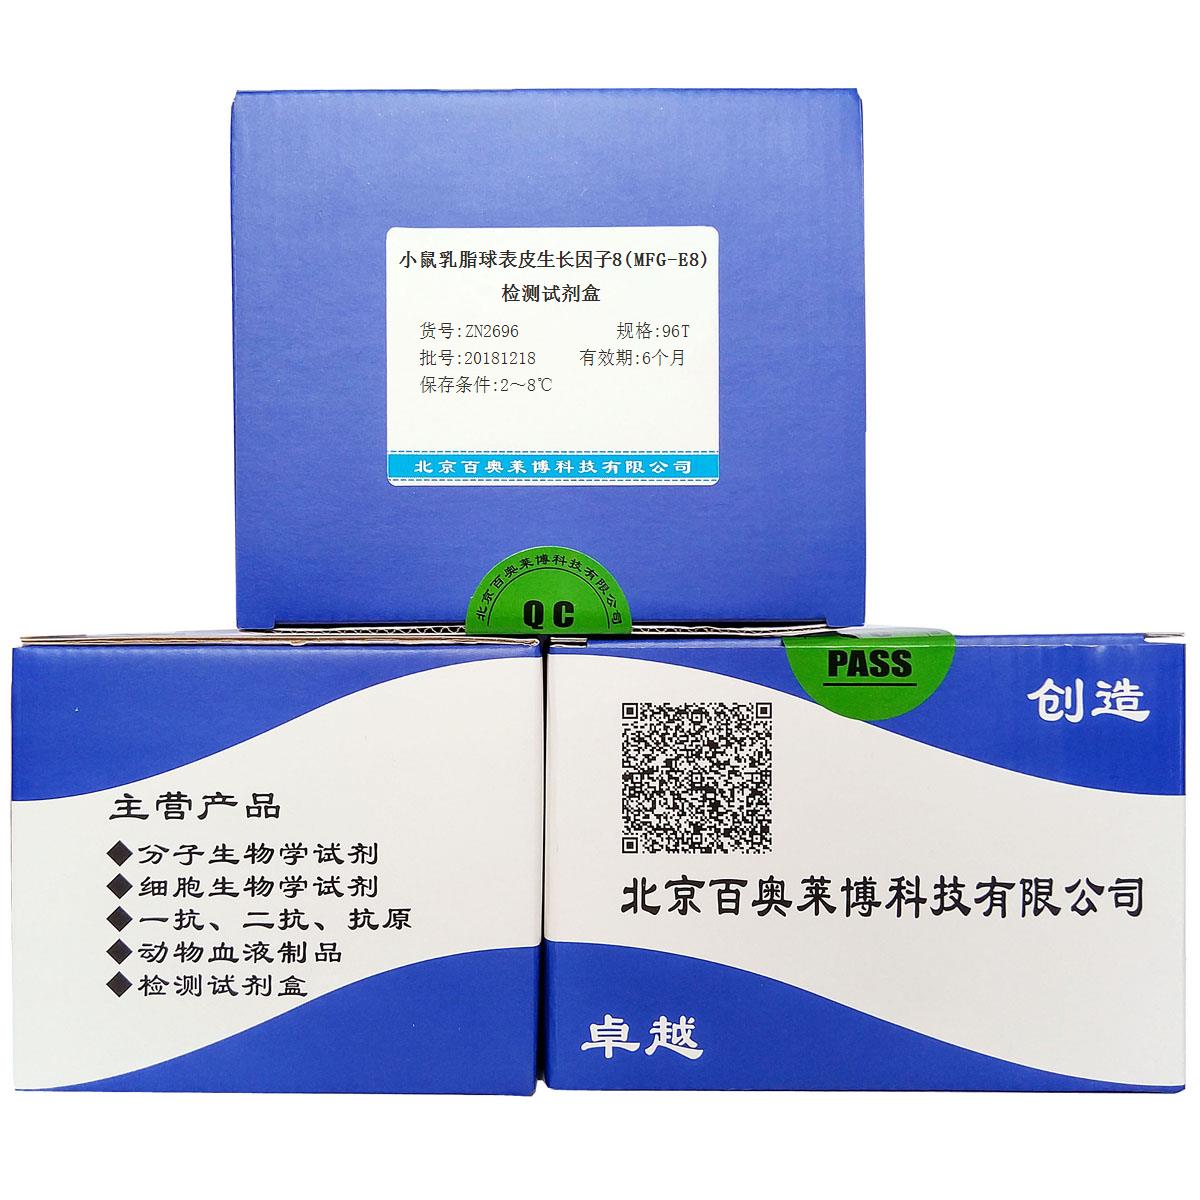 小鼠乳脂球表皮生长因子8(MFG-E8)检测试剂盒